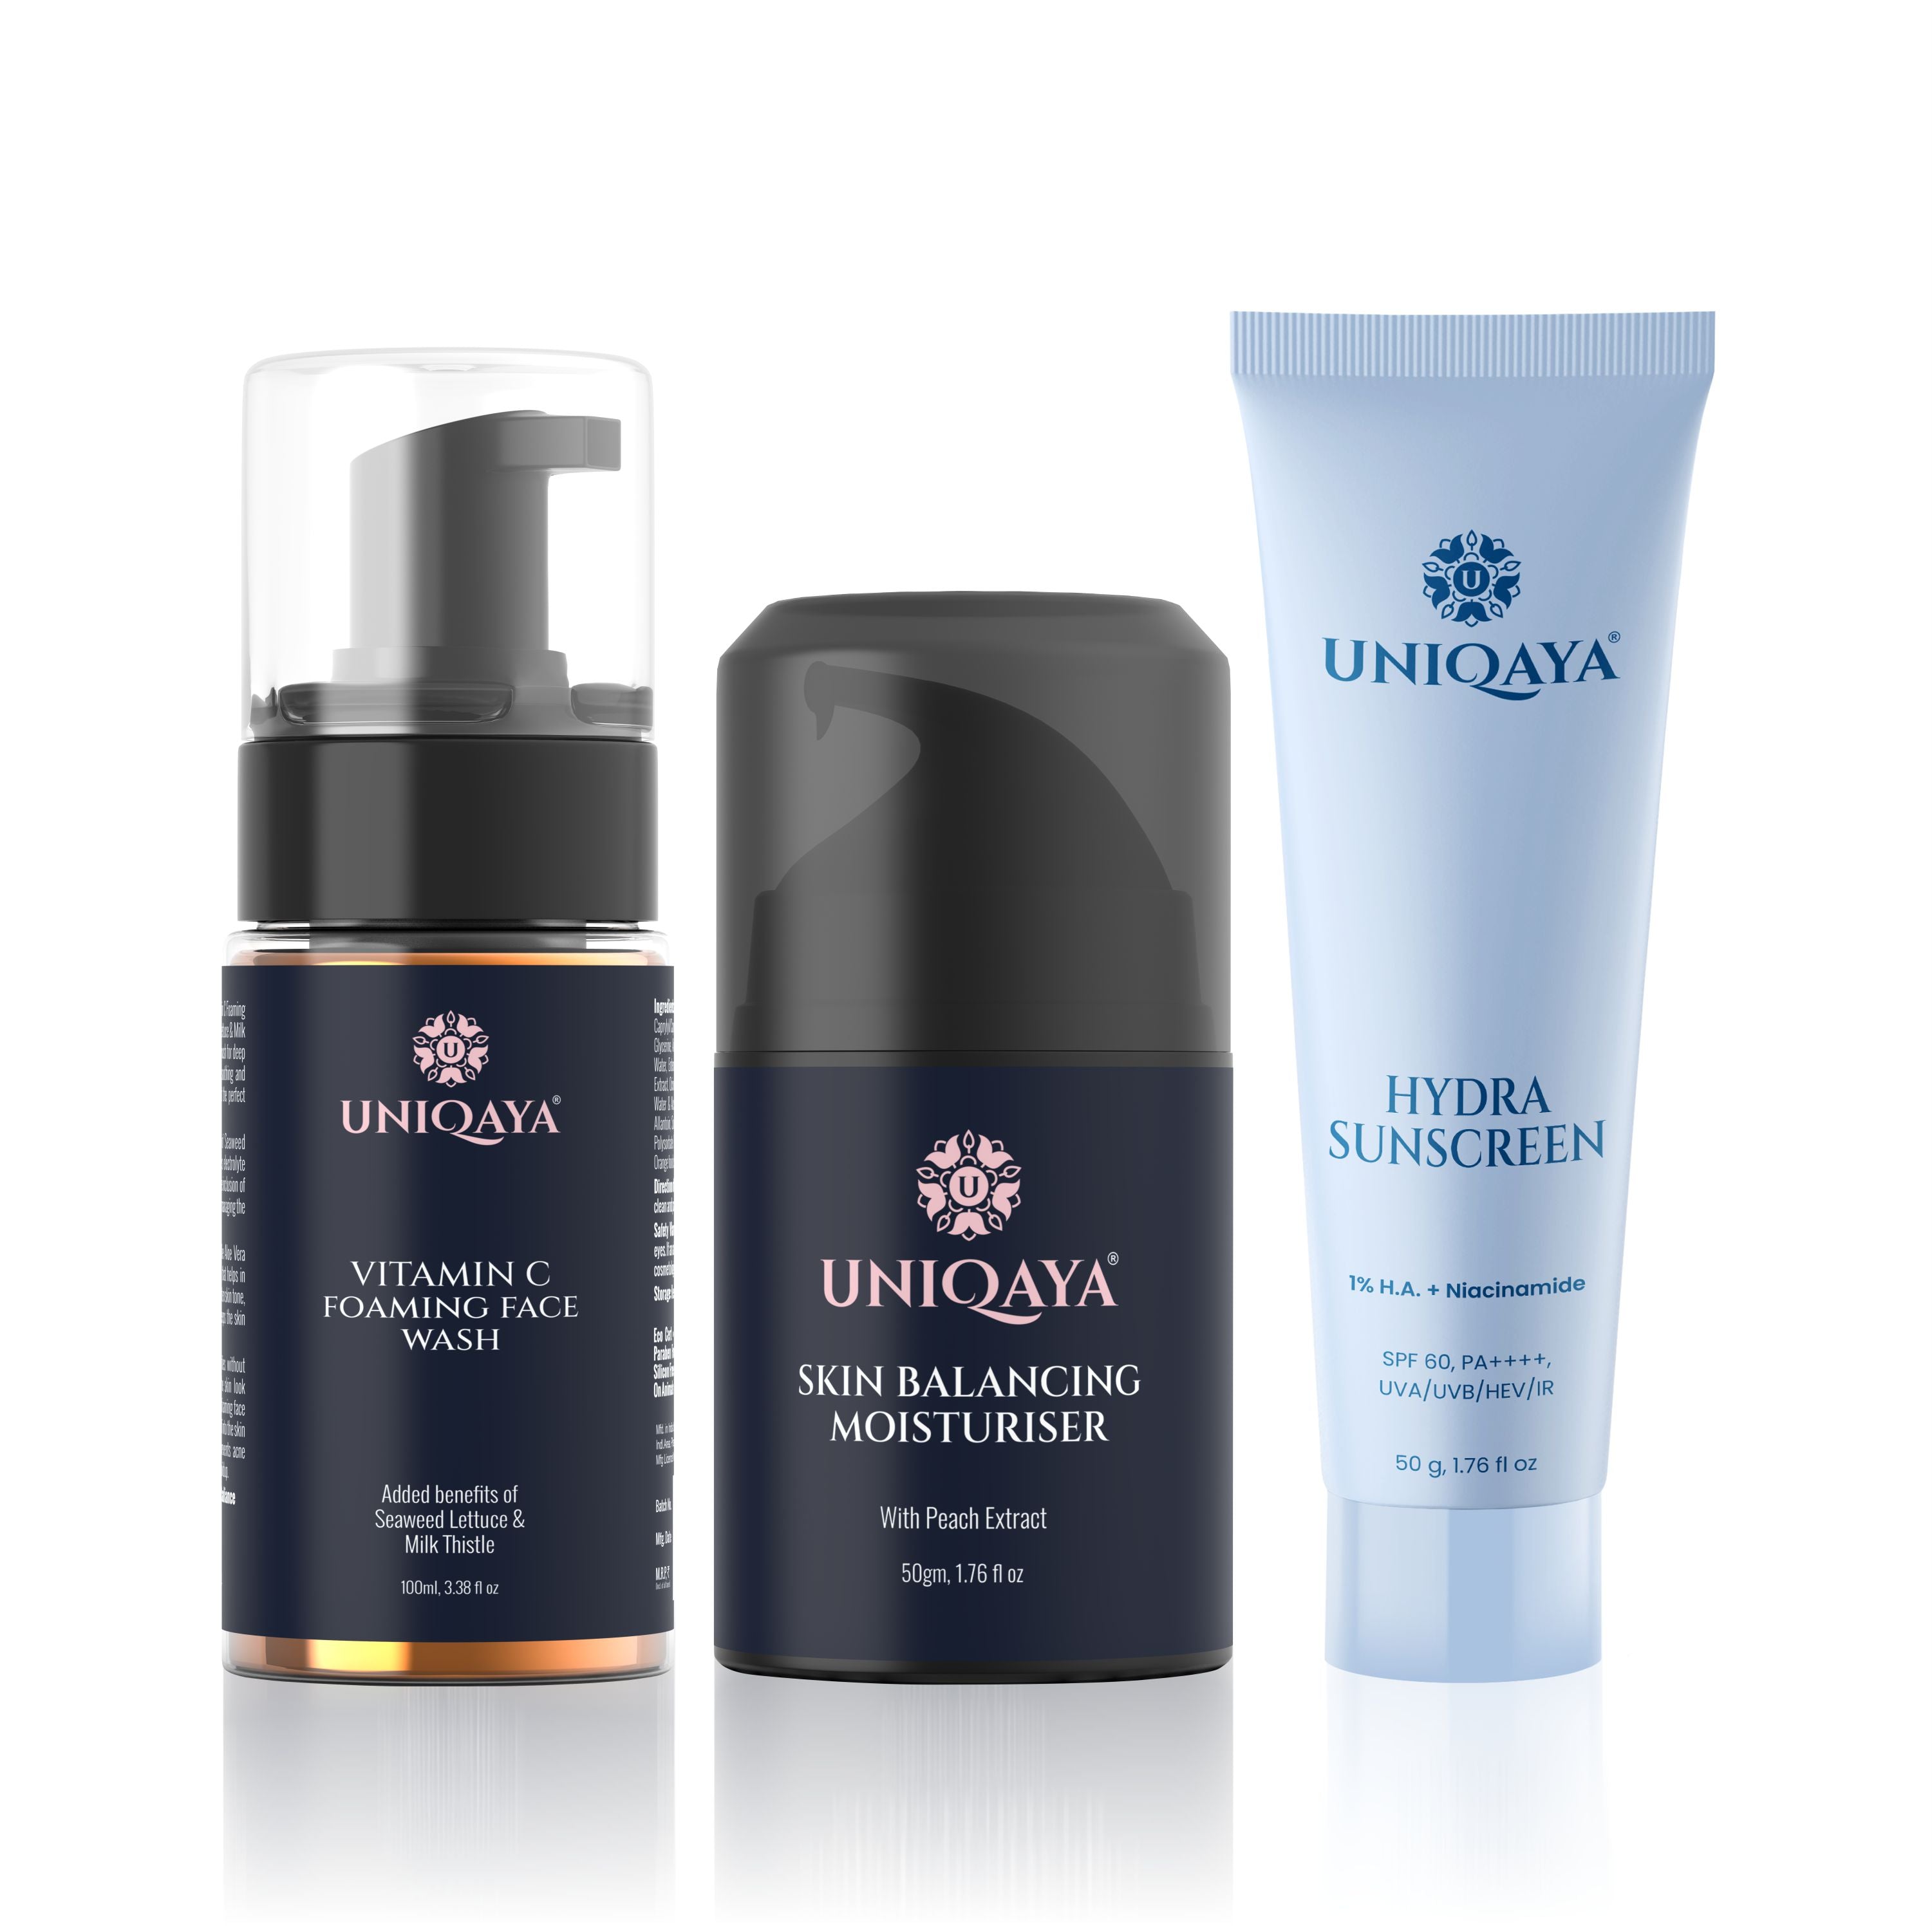 Vitamin C Foaming Face Wash, Skin Balancing Moisturiser, and Hydra Sunscreen | Skin Care Combo Pack